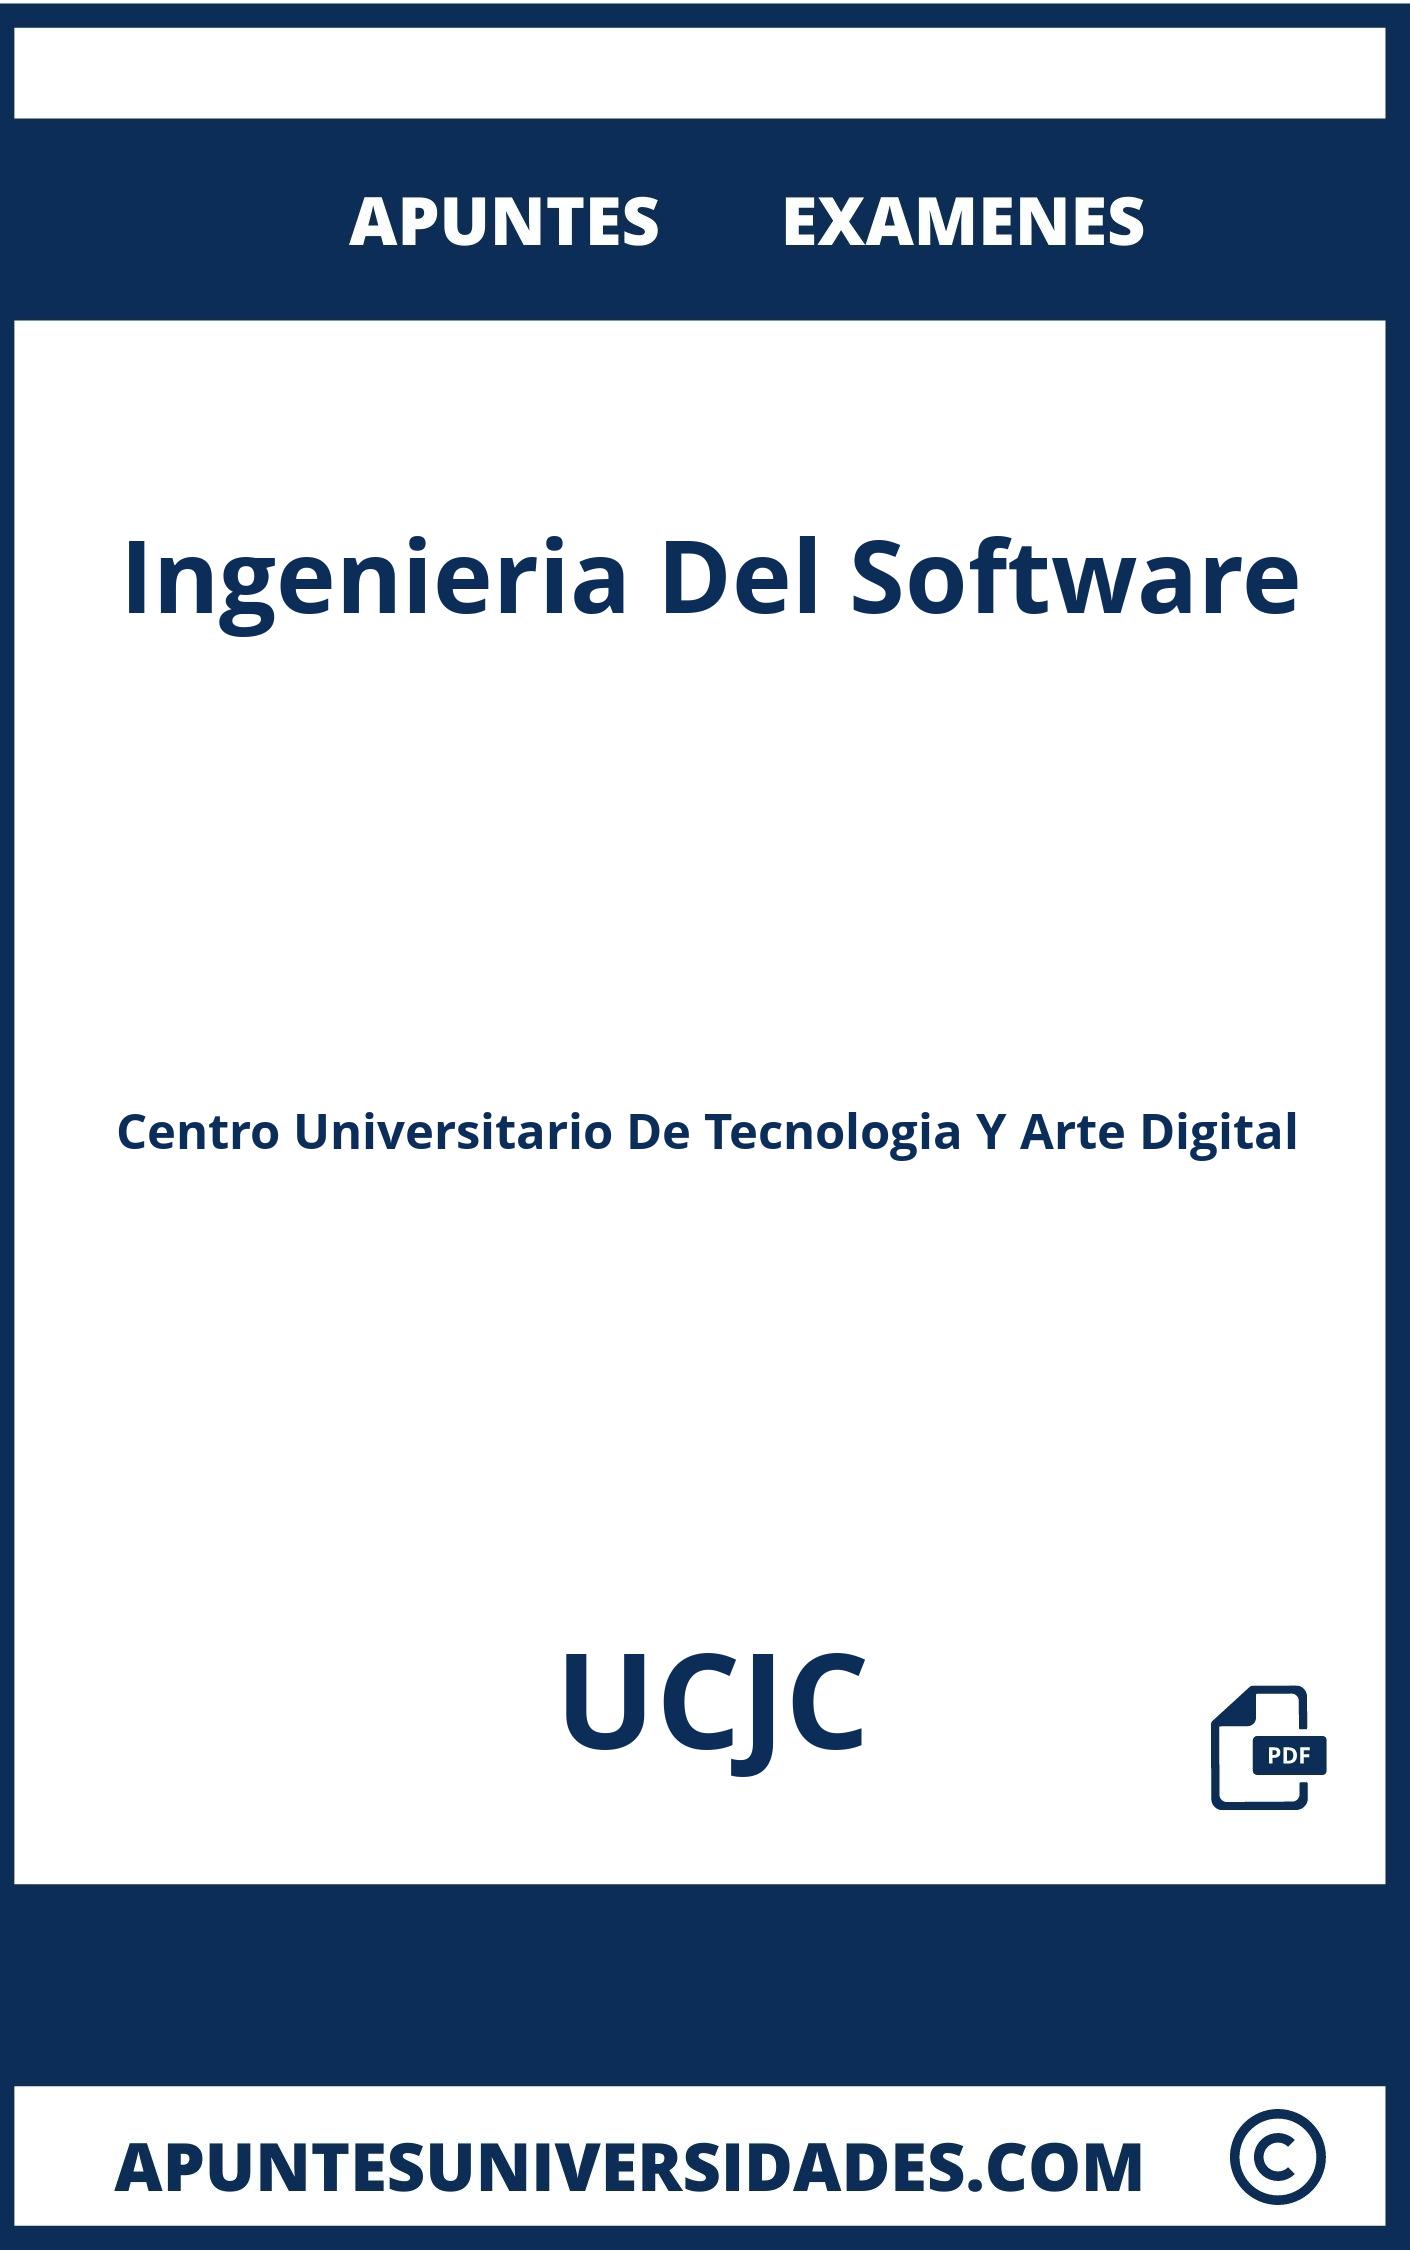 Apuntes Examenes Ingenieria Del Software UCJC